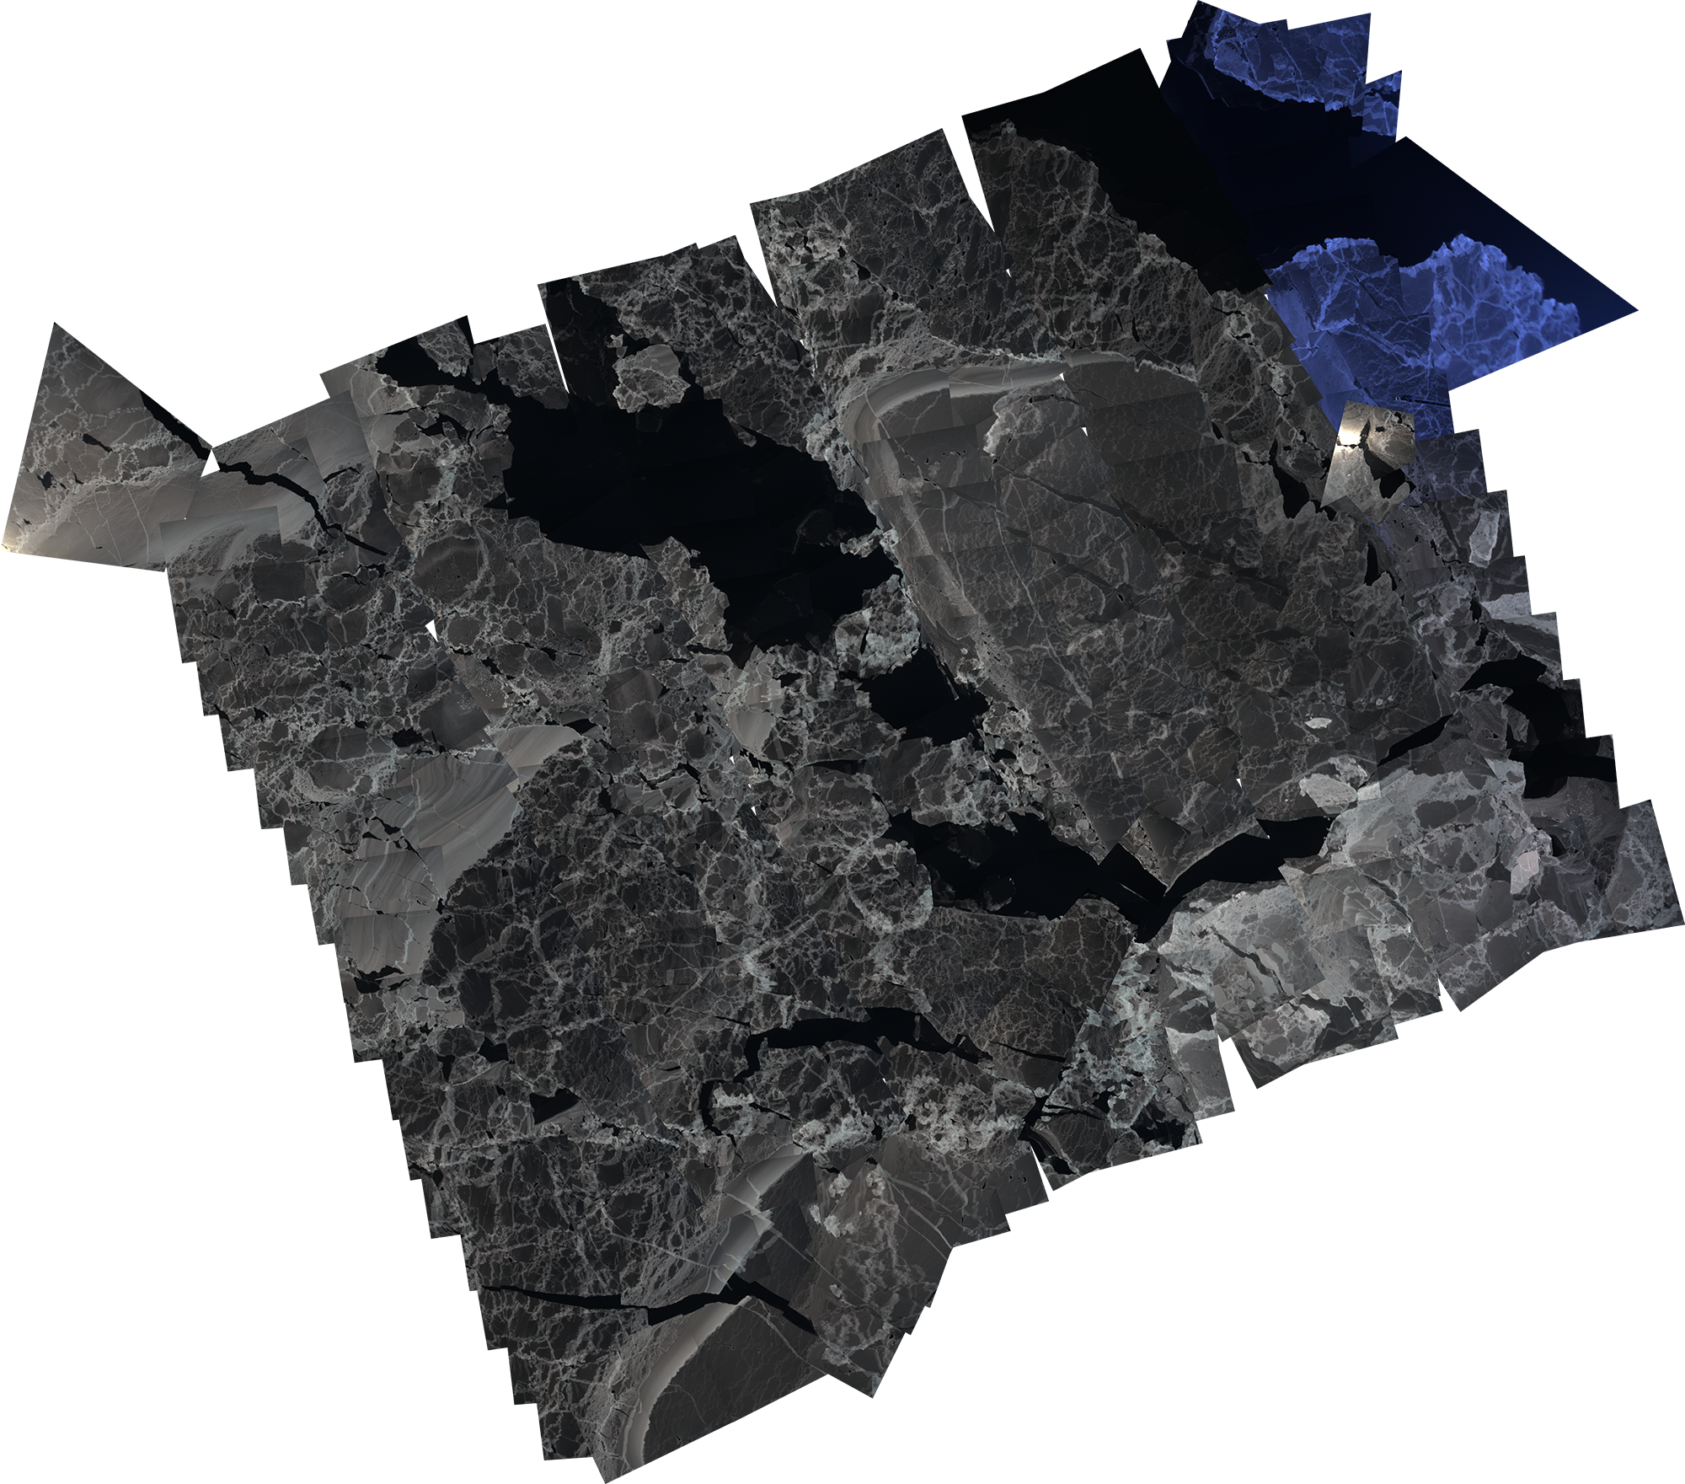 NORCE, Mosaikk av bilder tatt av Shark-dronen. Området er ca 8 km x 6 km., Mosaikk2, <p>NORCE</p>, pixelert satelittbilde av landskap